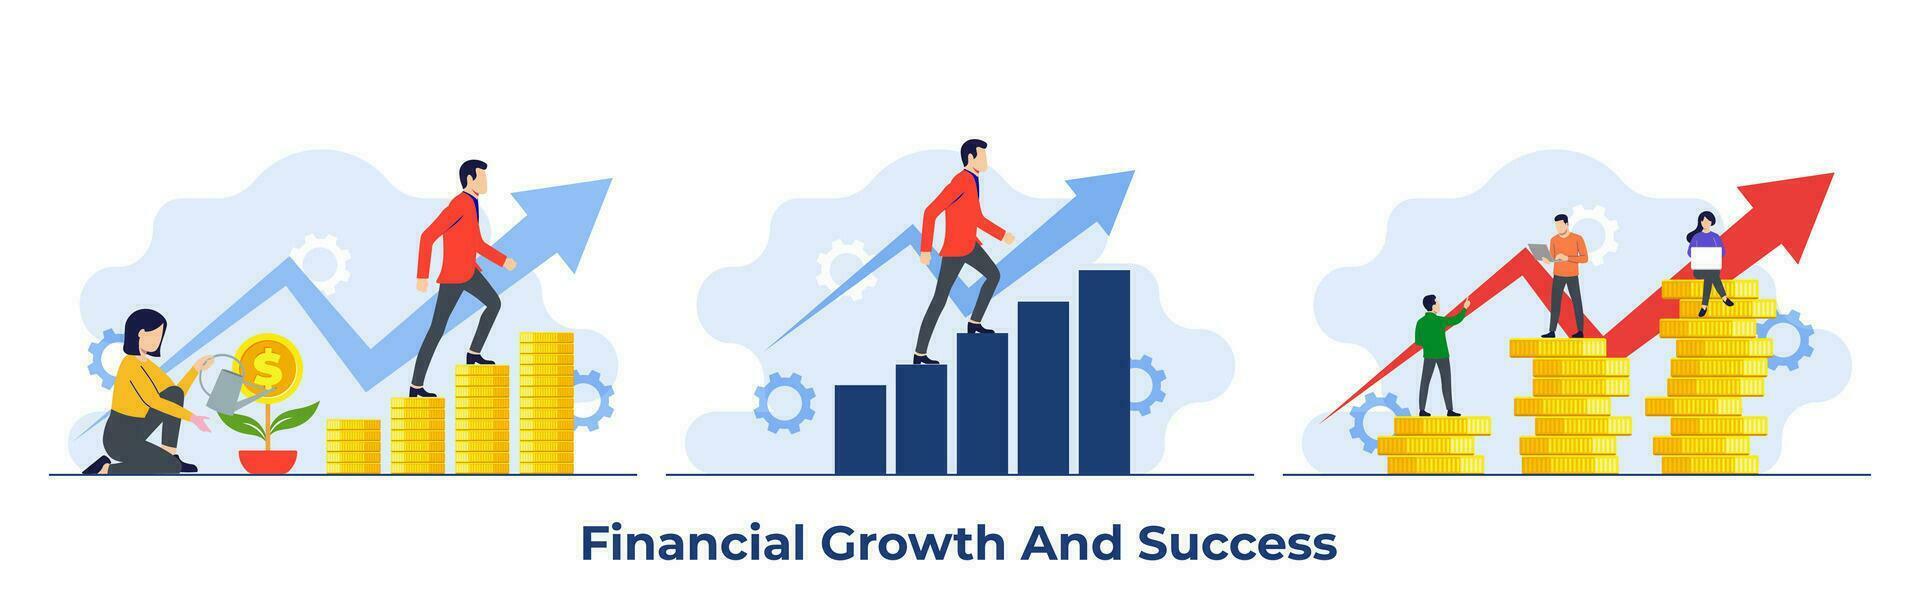 einstellen von finanziell Wachstum eben Illustrationen, Geschäft Finanzen, Speichern Geld, Investition, persönlich Wachstum, Selbstverbesserung, Selbstentwicklung, Metapher Wachstum Persönlichkeit, Werdegang Wachstum, vektor